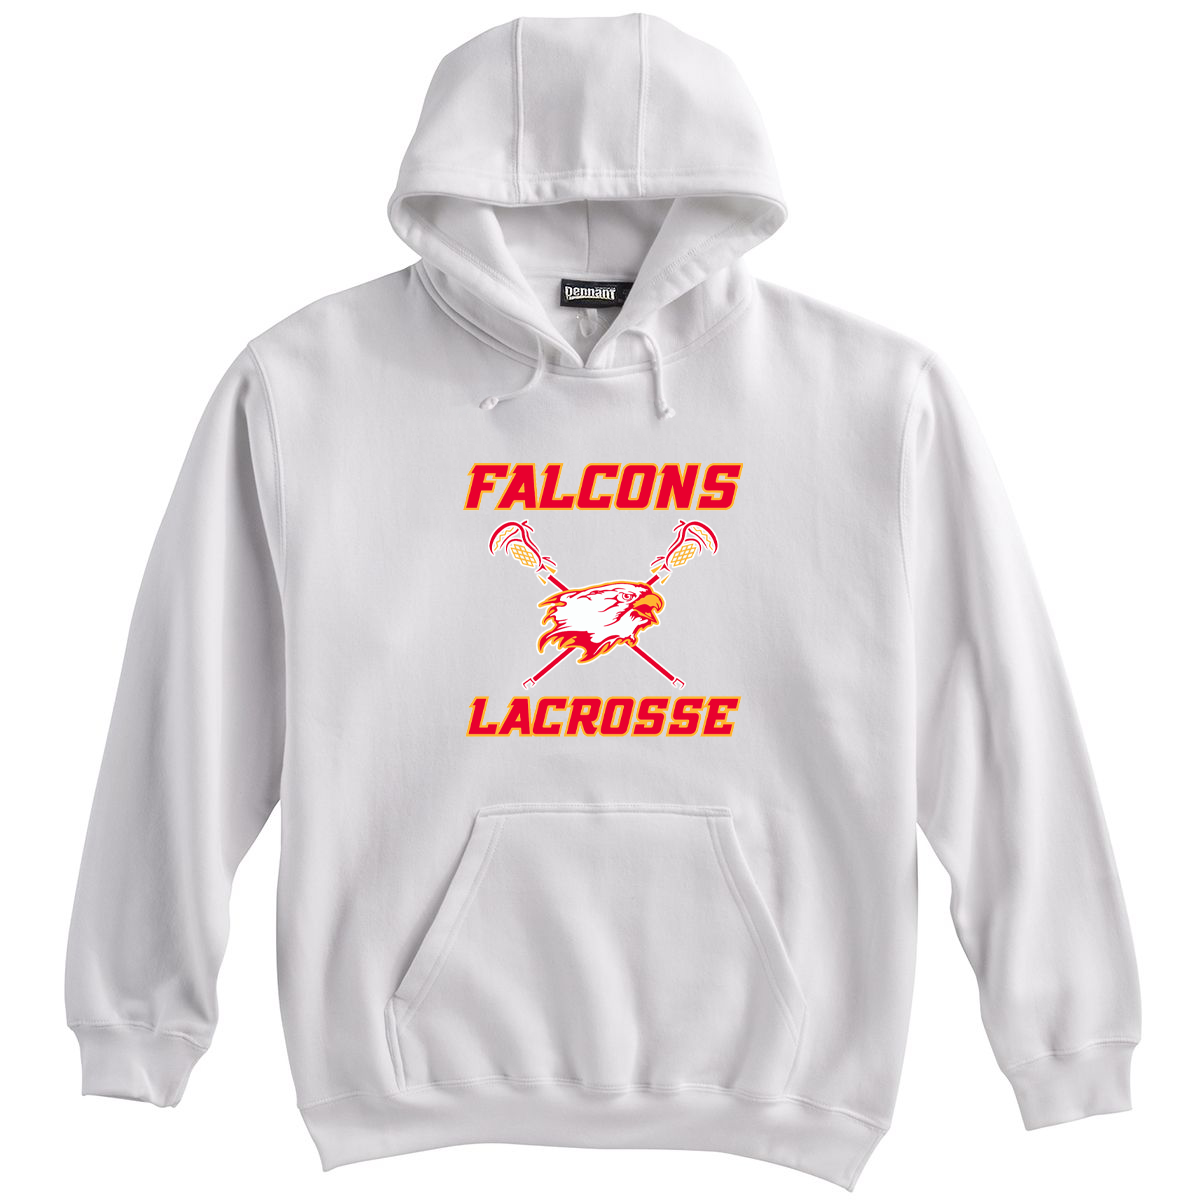 Falcons Lacrosse Club Sweatshirt